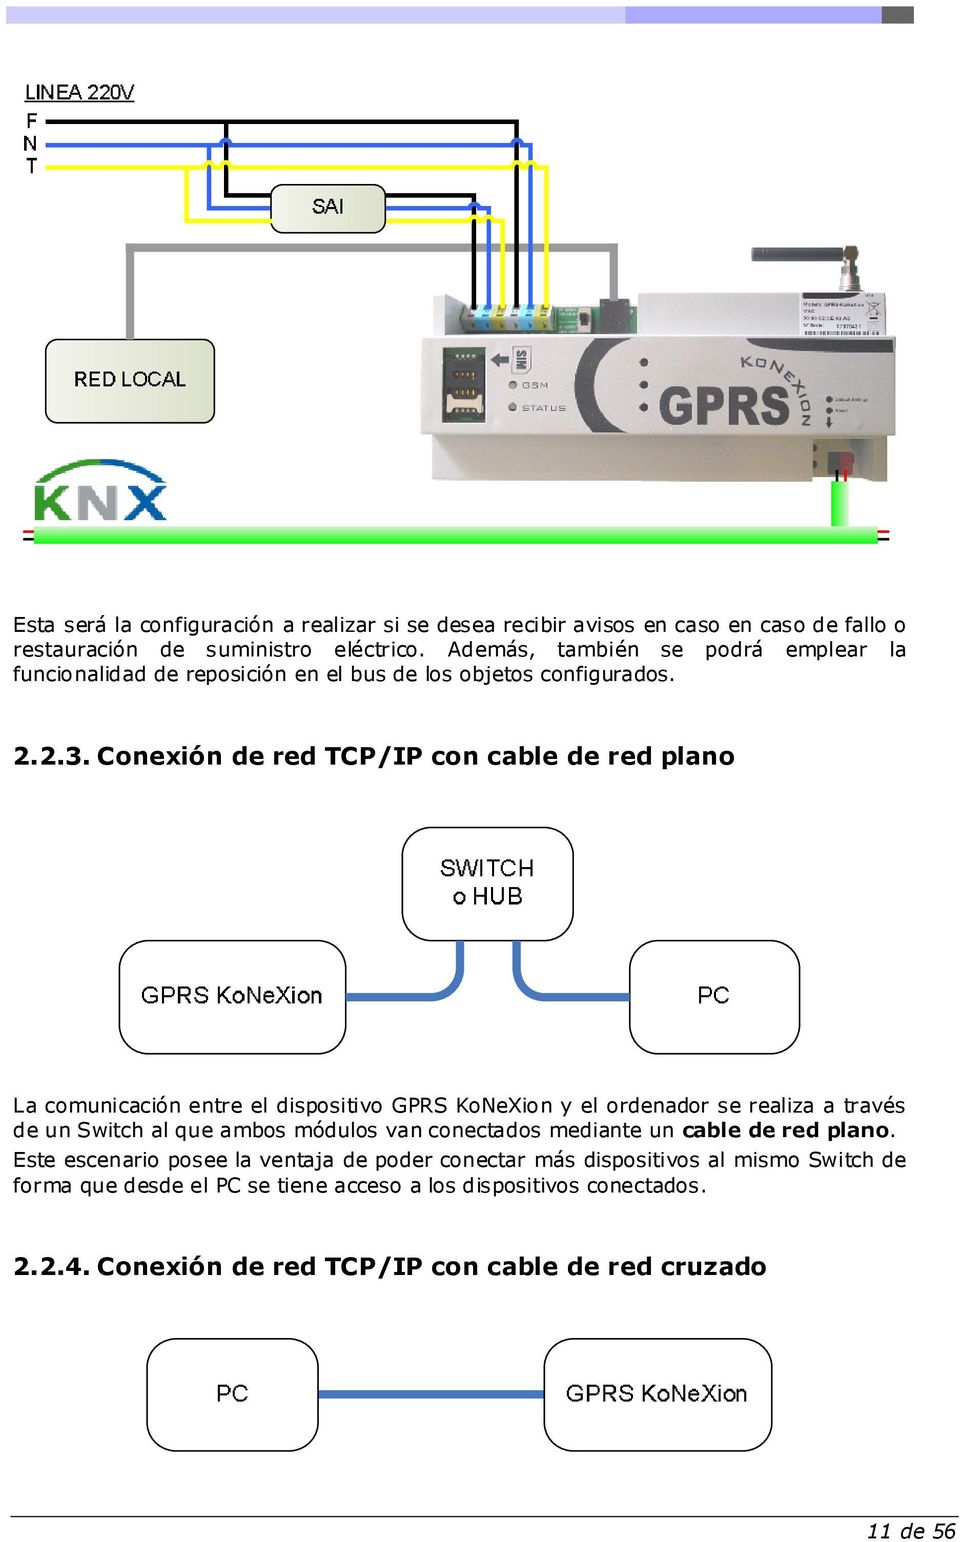 Cnexión de red TCP/IP cn cable de red plan La cmunicación entre el dispsitiv GPRS KNeXin y el rdenadr se realiza a través de un Switch al que ambs móduls